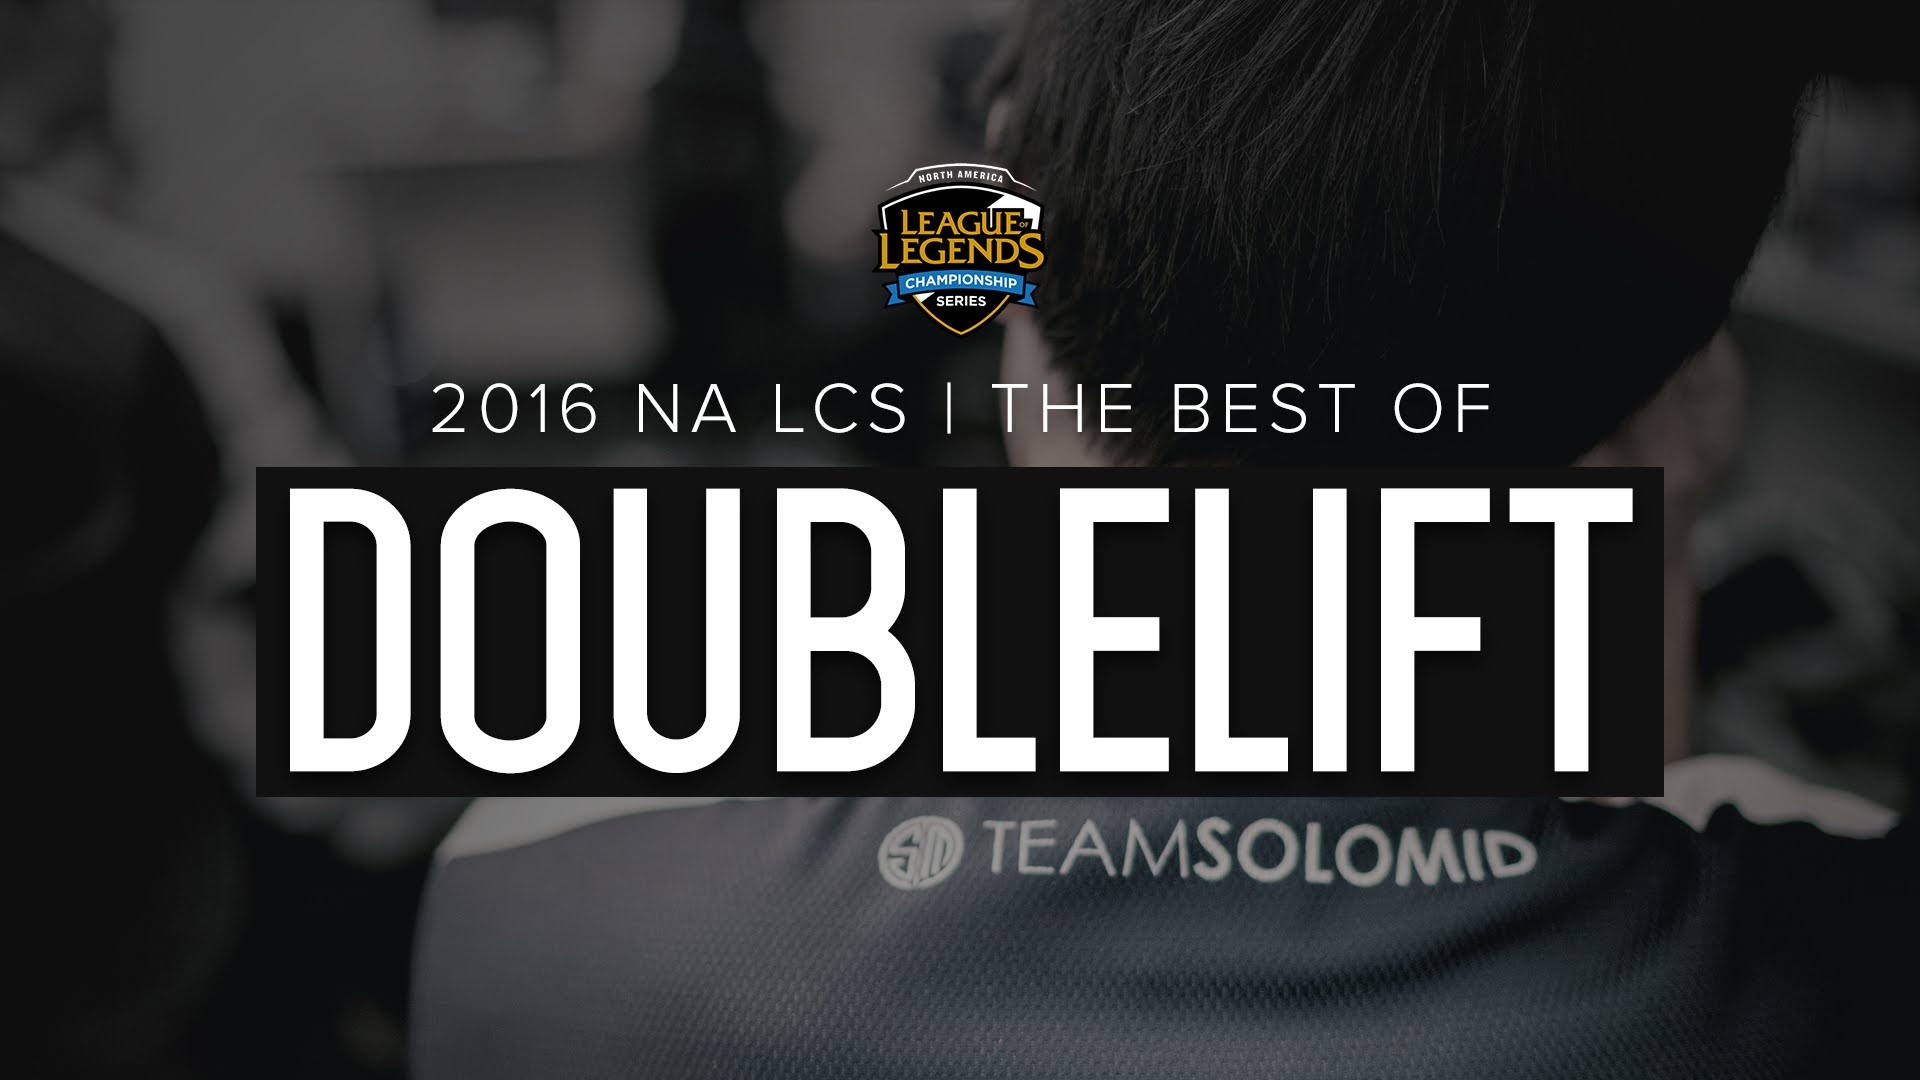 Best of TSM Doublelift 2016 LCS Season